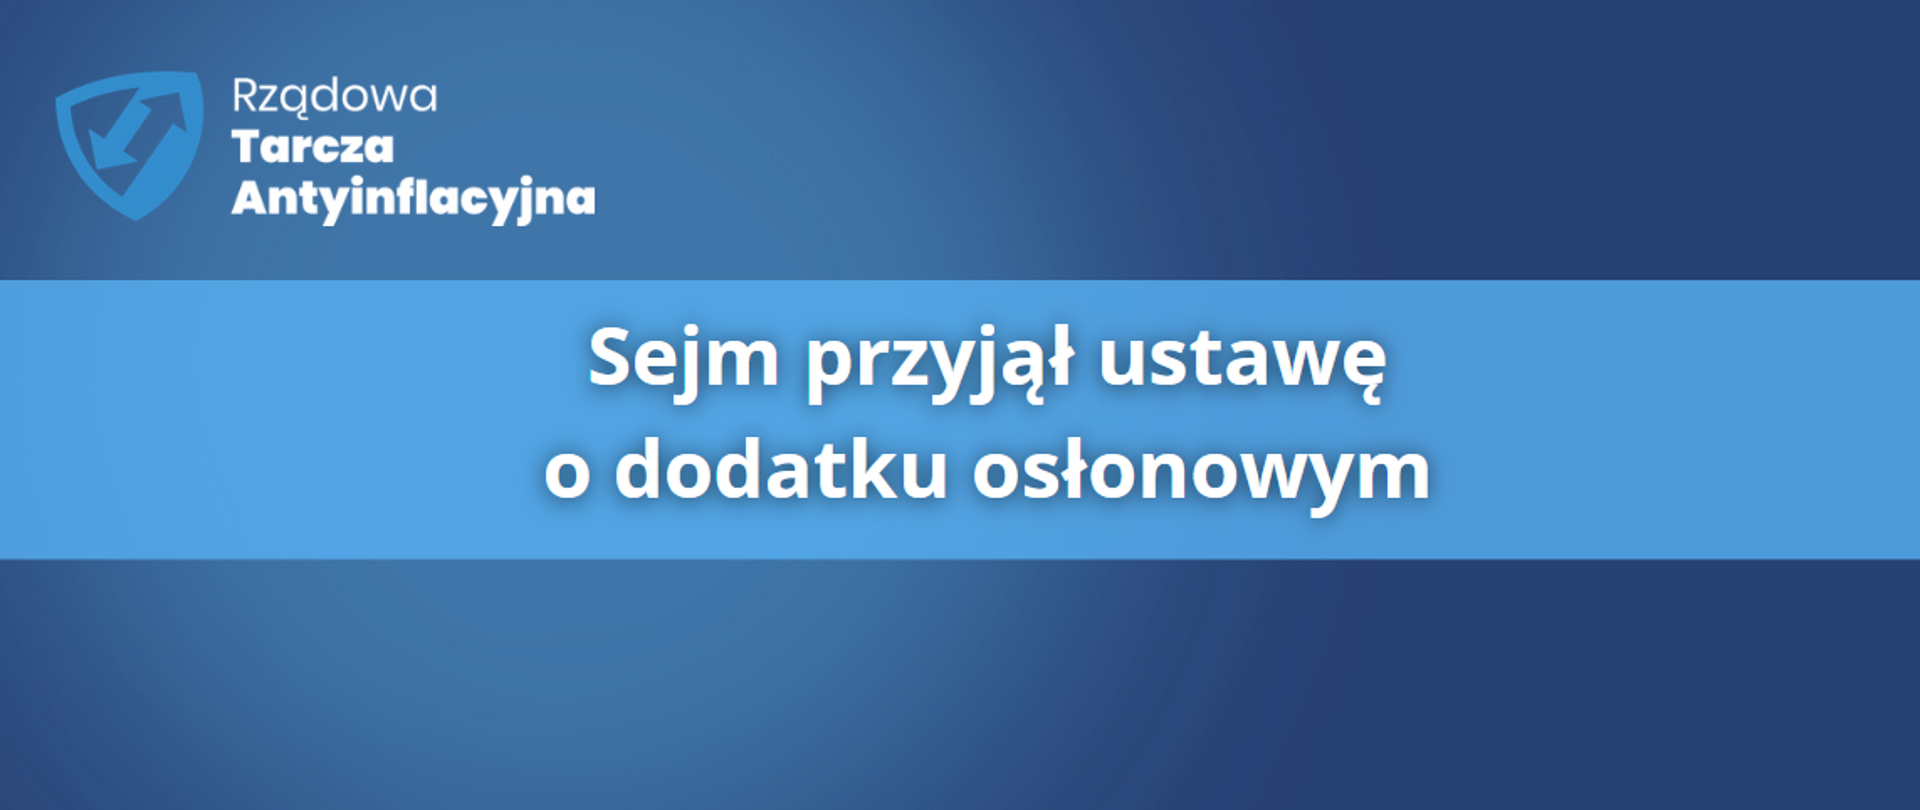 Sejm przyjął ustawę o dodatku osłonowym 